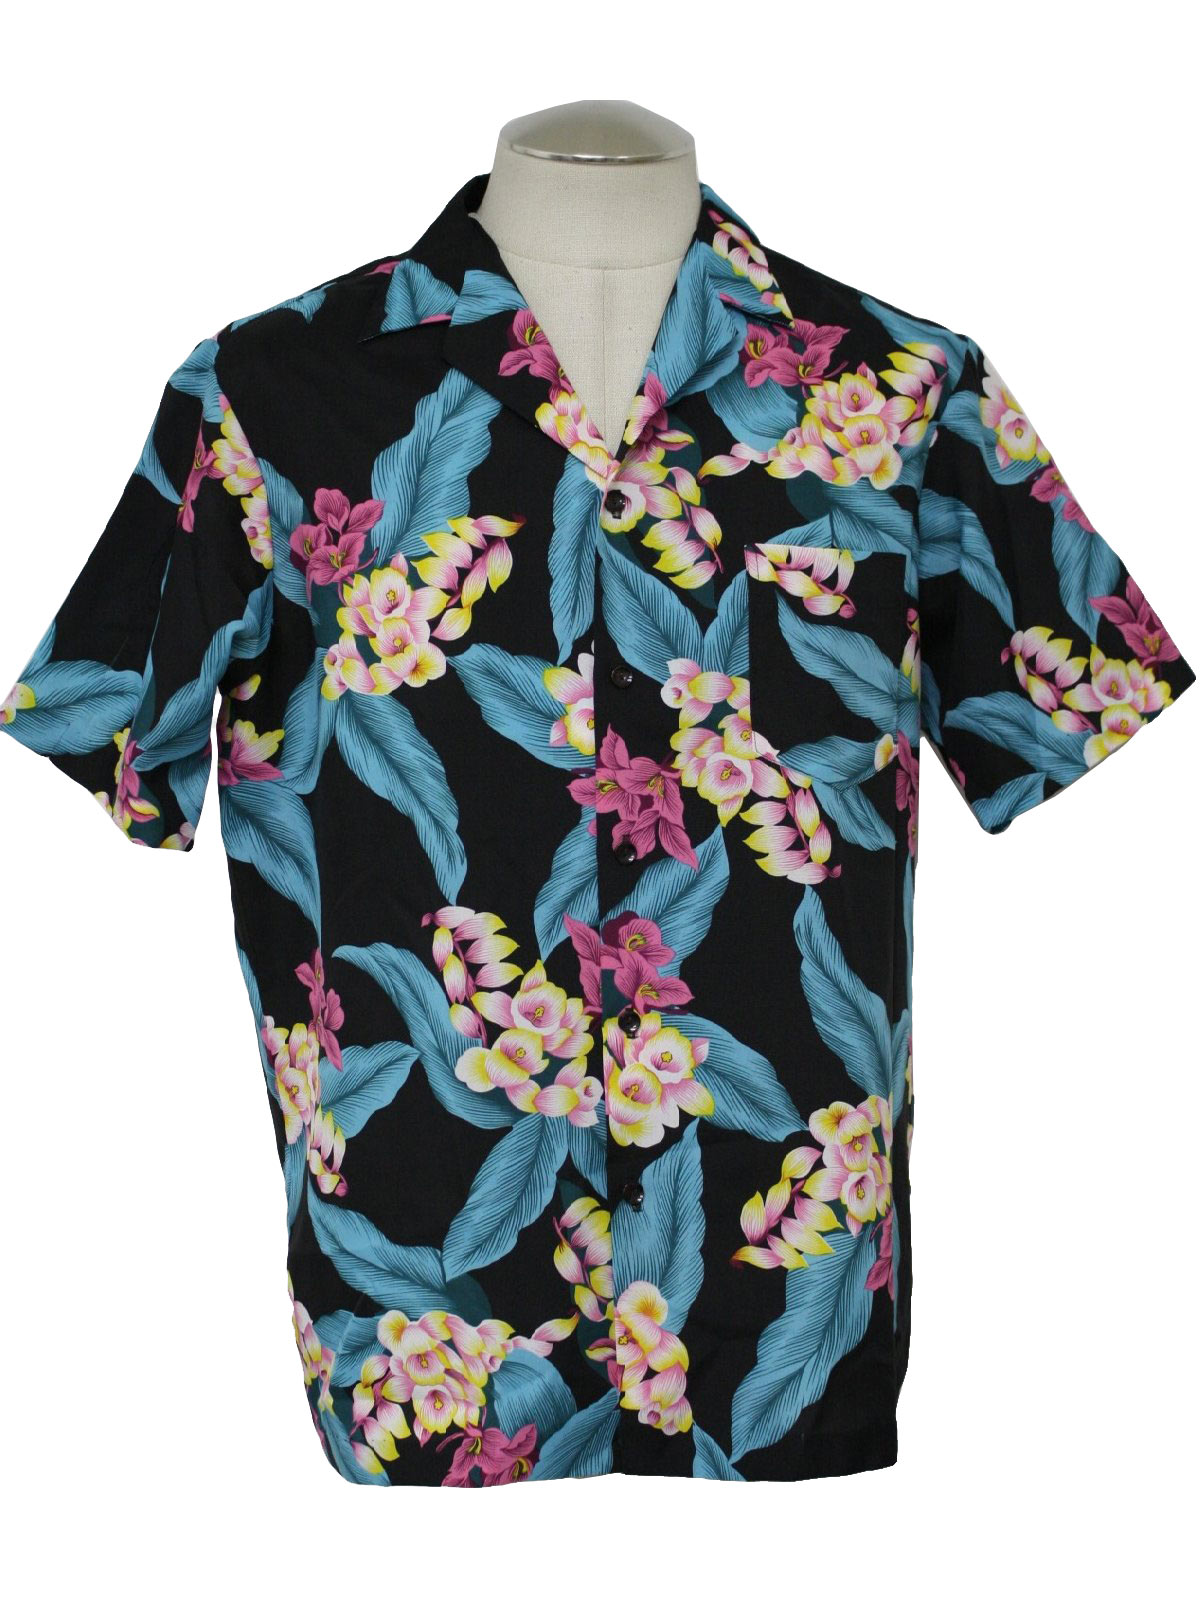 Retro 80s Hawaiian Shirt (Hilo Hattie) : 80s -Hilo Hattie- Mens black ...